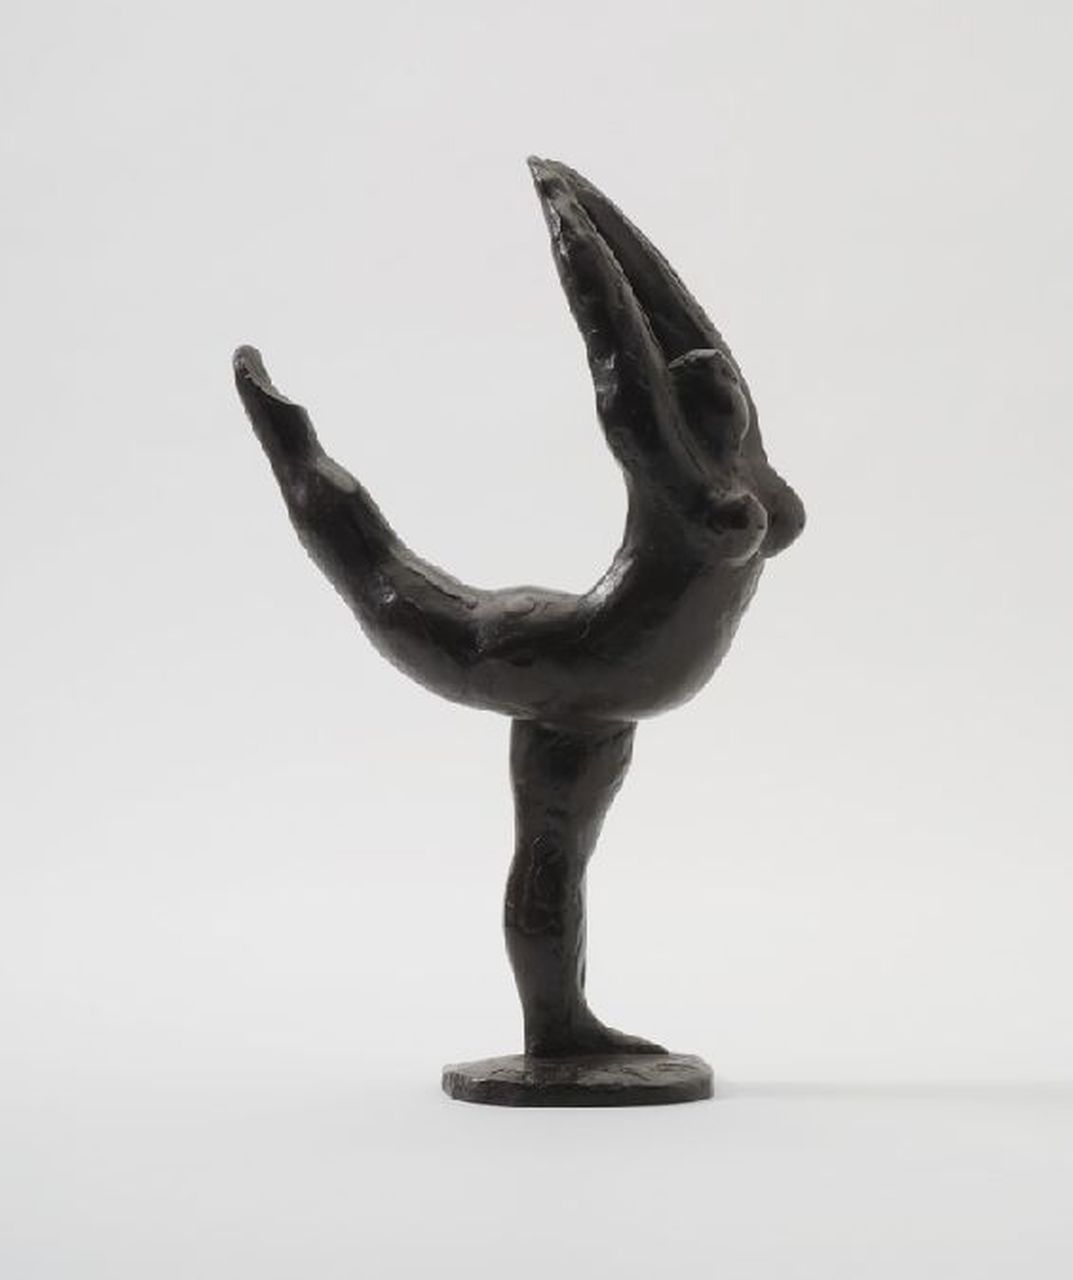 Jonk N.  | Nicolaas 'Nic' Jonk, Dans, brons 29,6 x 18,0 cm, gesigneerd op basis en gedateerd 1981